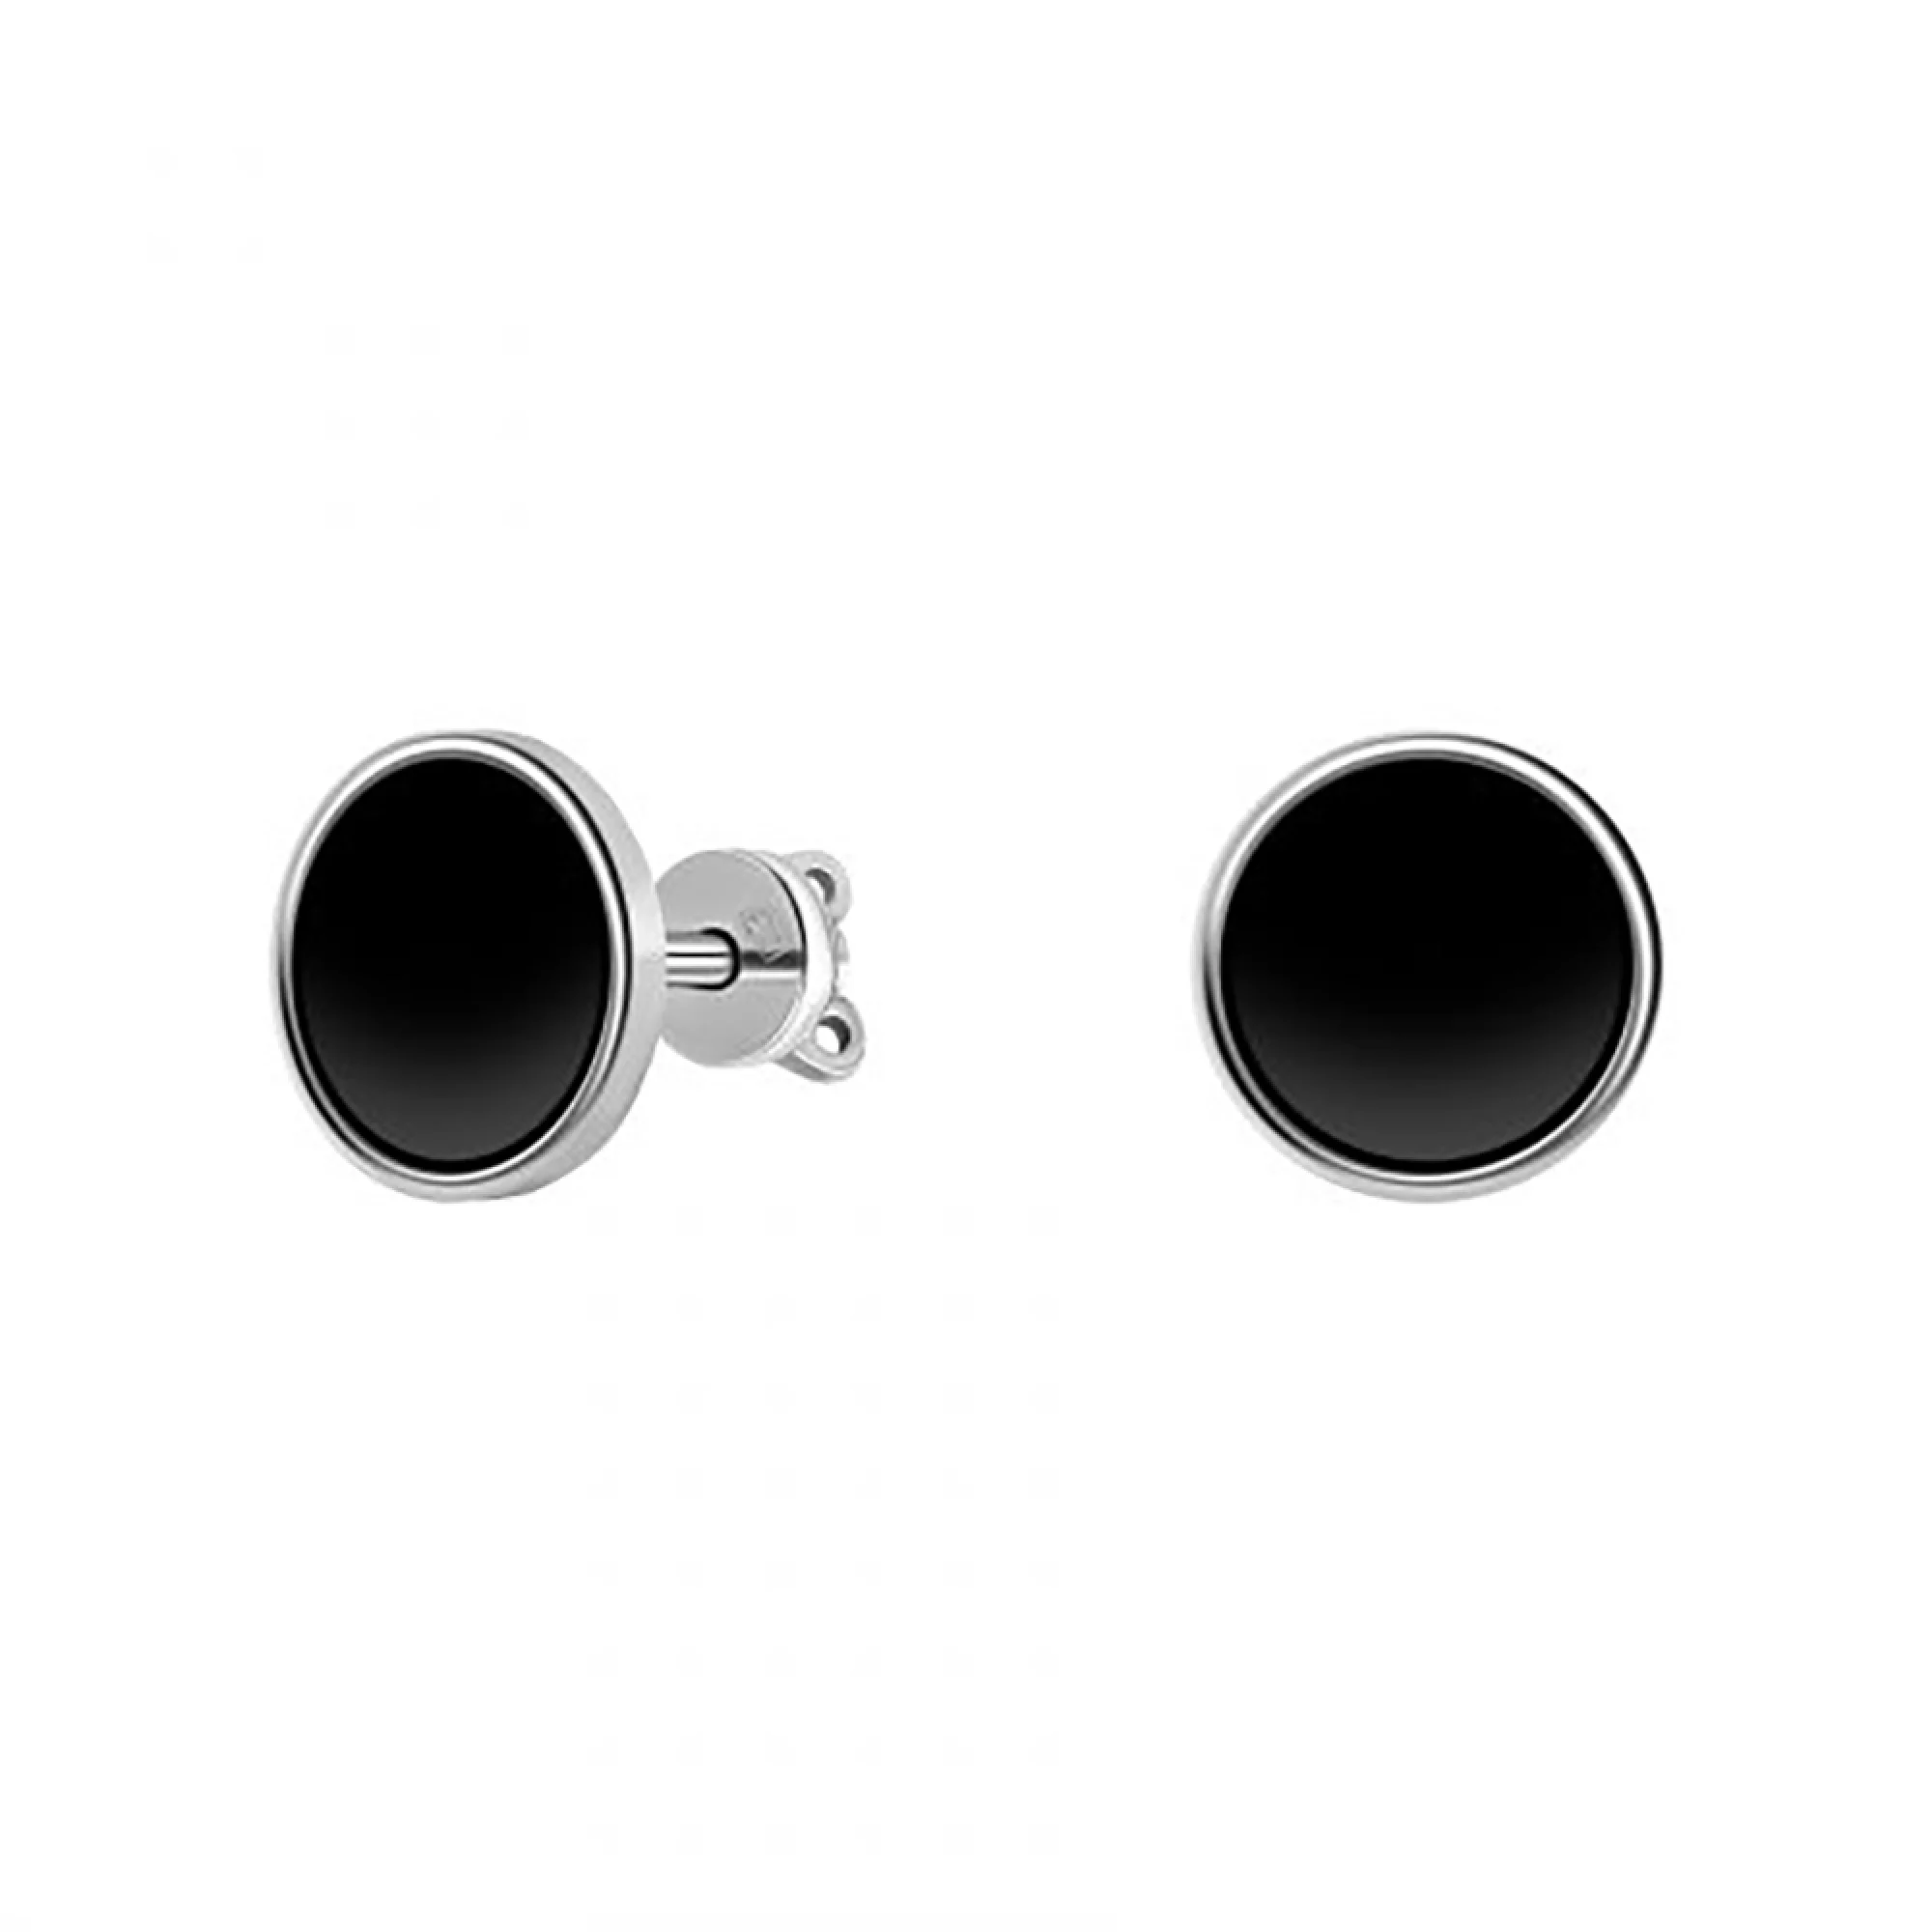 Срібні сережки-гвоздики з емаллю - 964442 – зображення 1